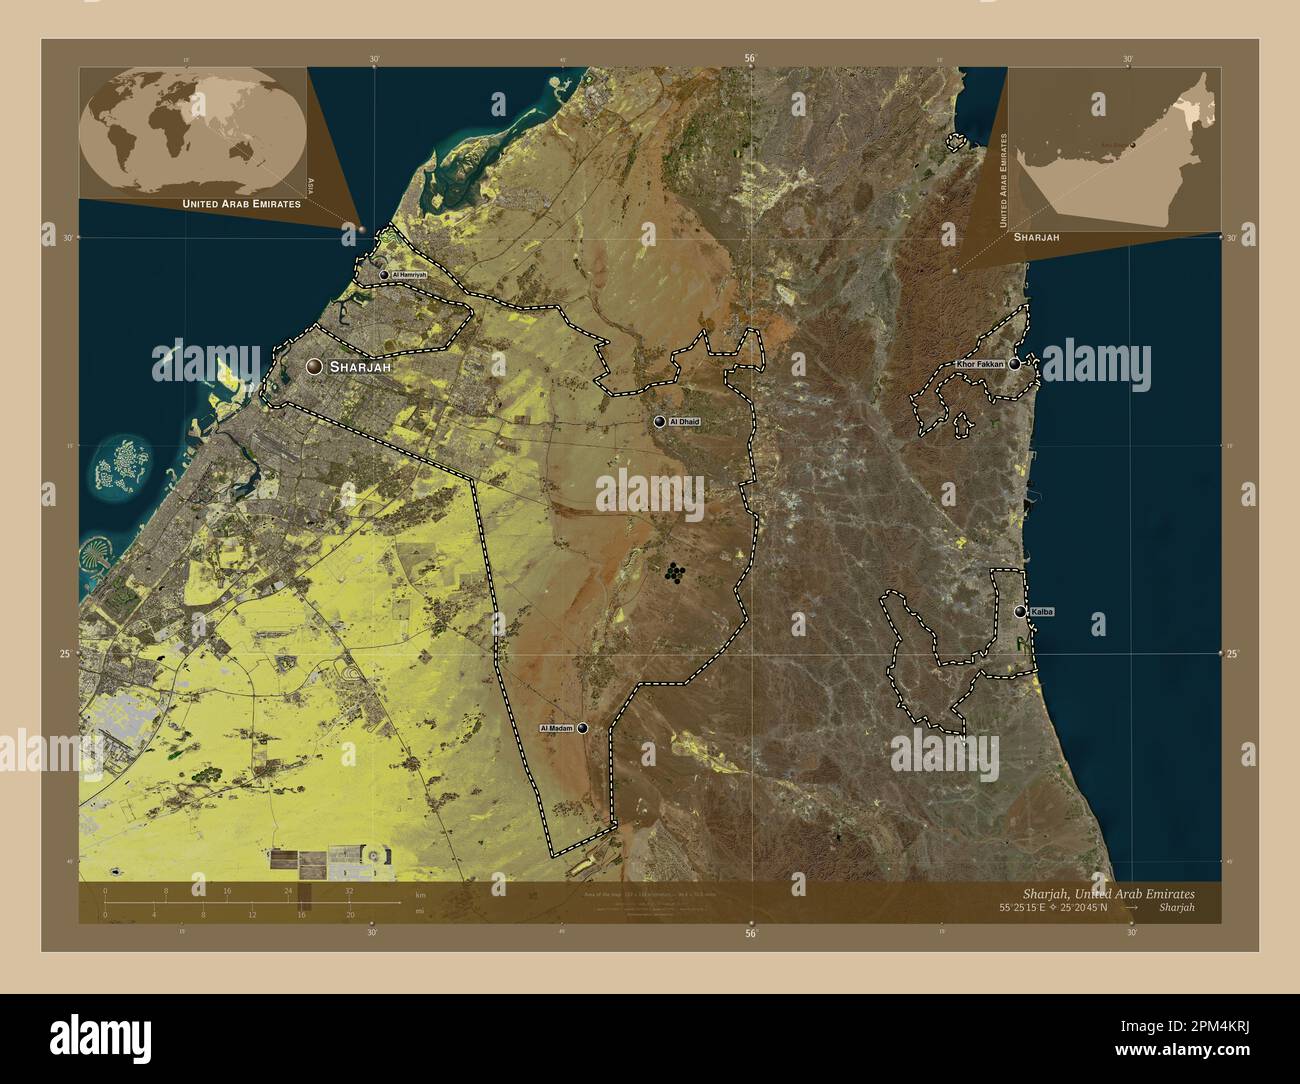 Sharjah, emirato degli Emirati Arabi Uniti. Mappa satellitare a bassa risoluzione. Località e nomi delle principali città della regione. Posizione ausiliaria ad angolo m Foto Stock